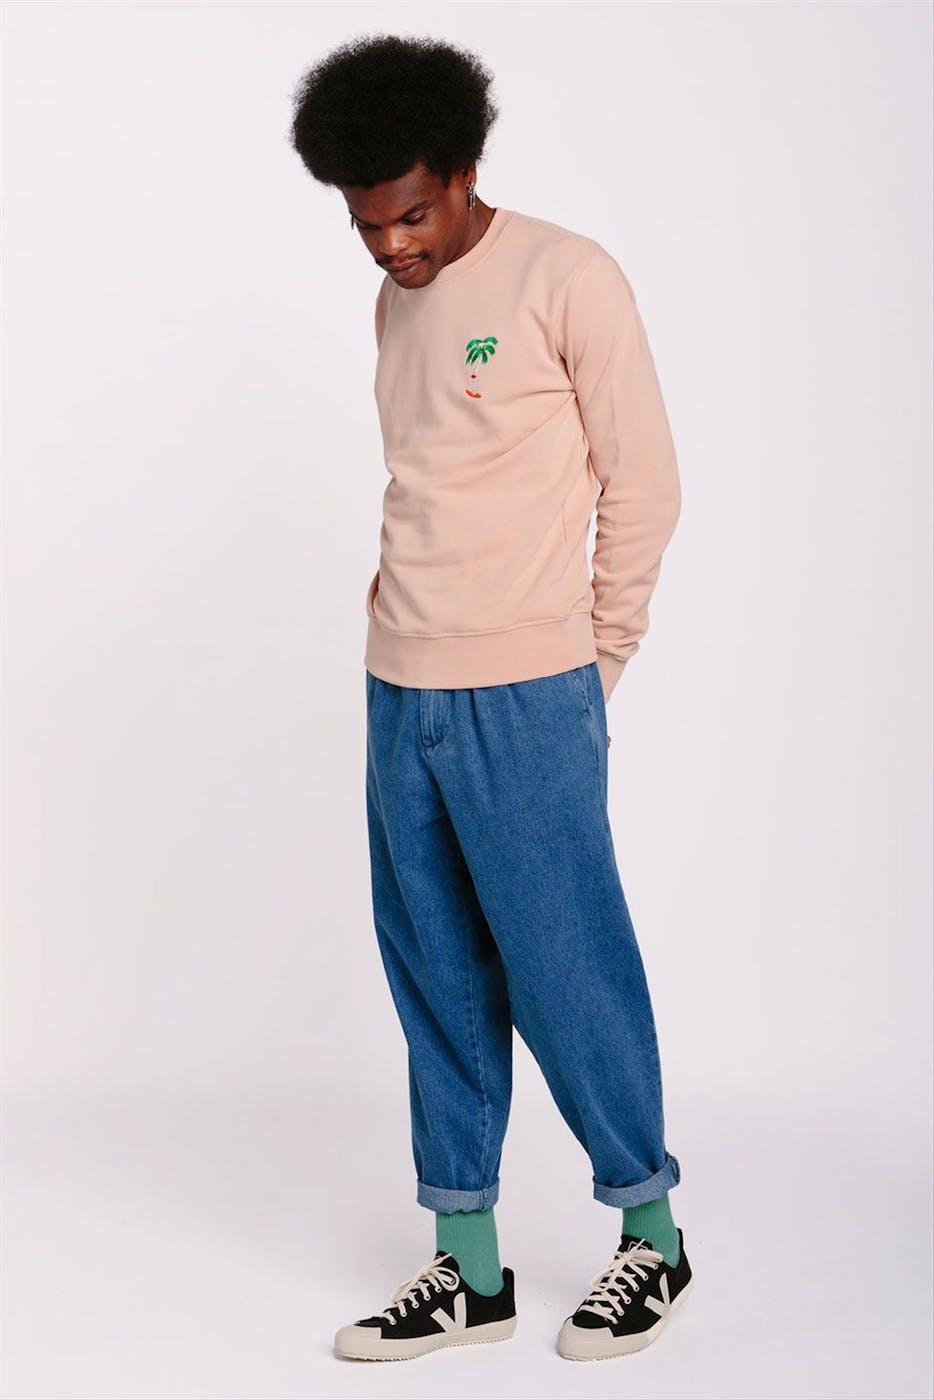 OLOW - Donkerroze Skatepalm sweater